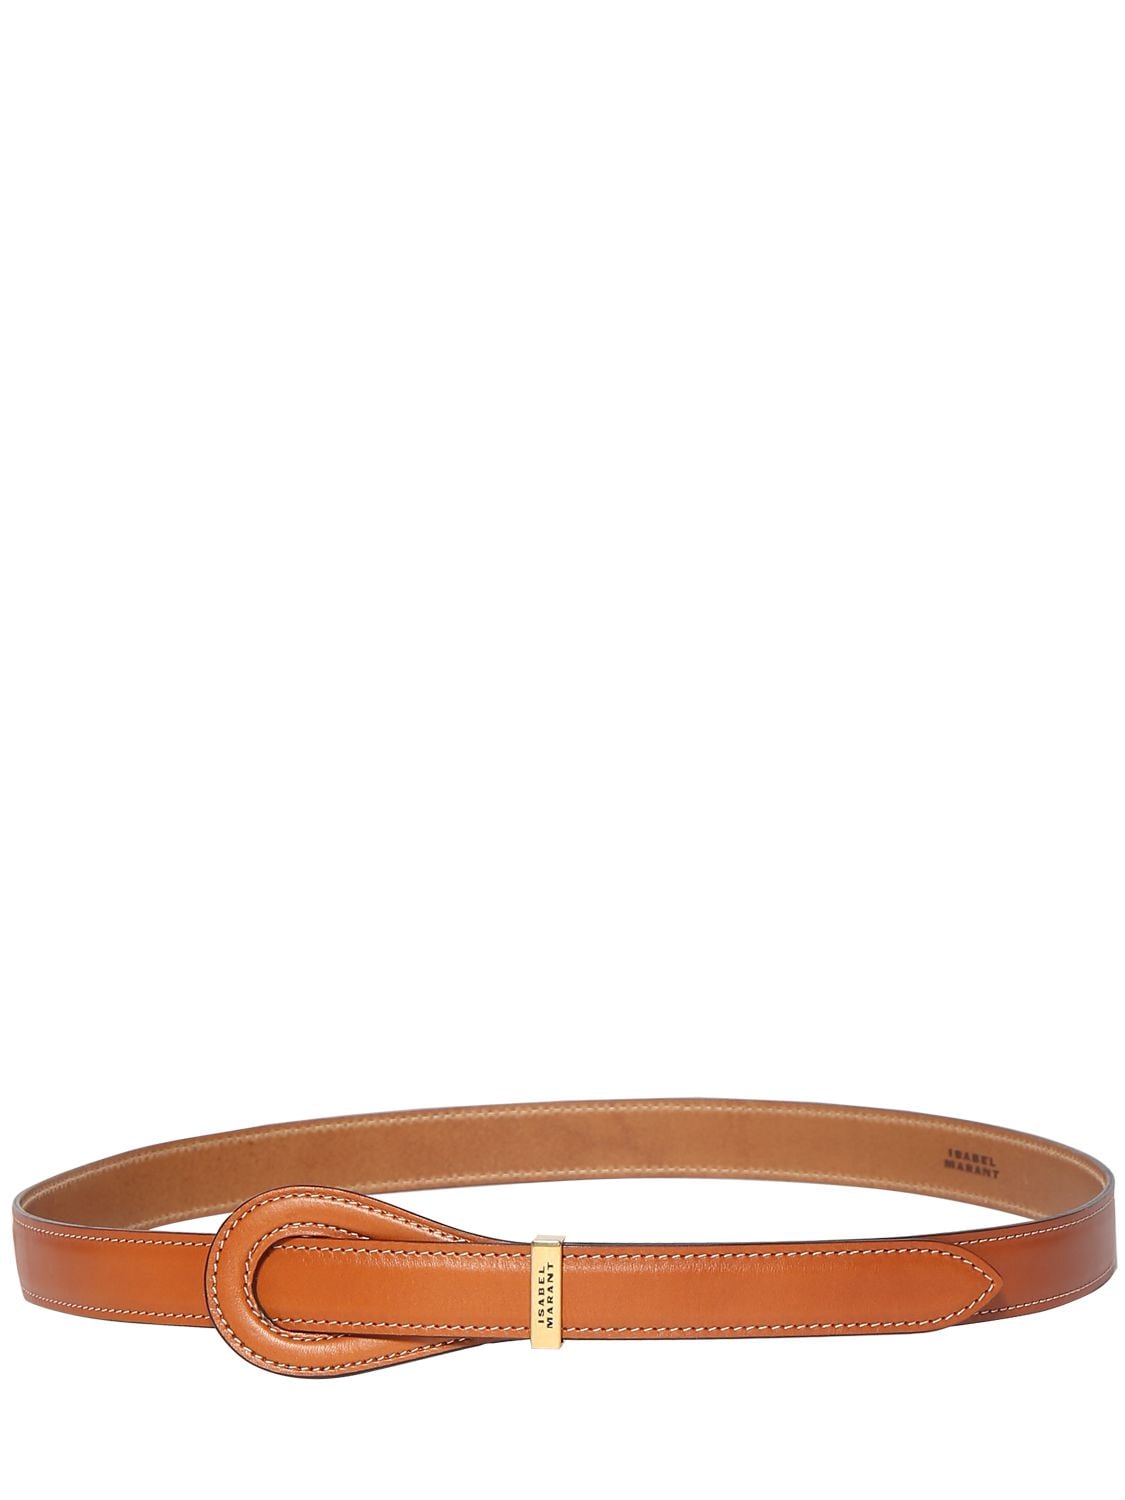 Image of Brindi Leather Belt